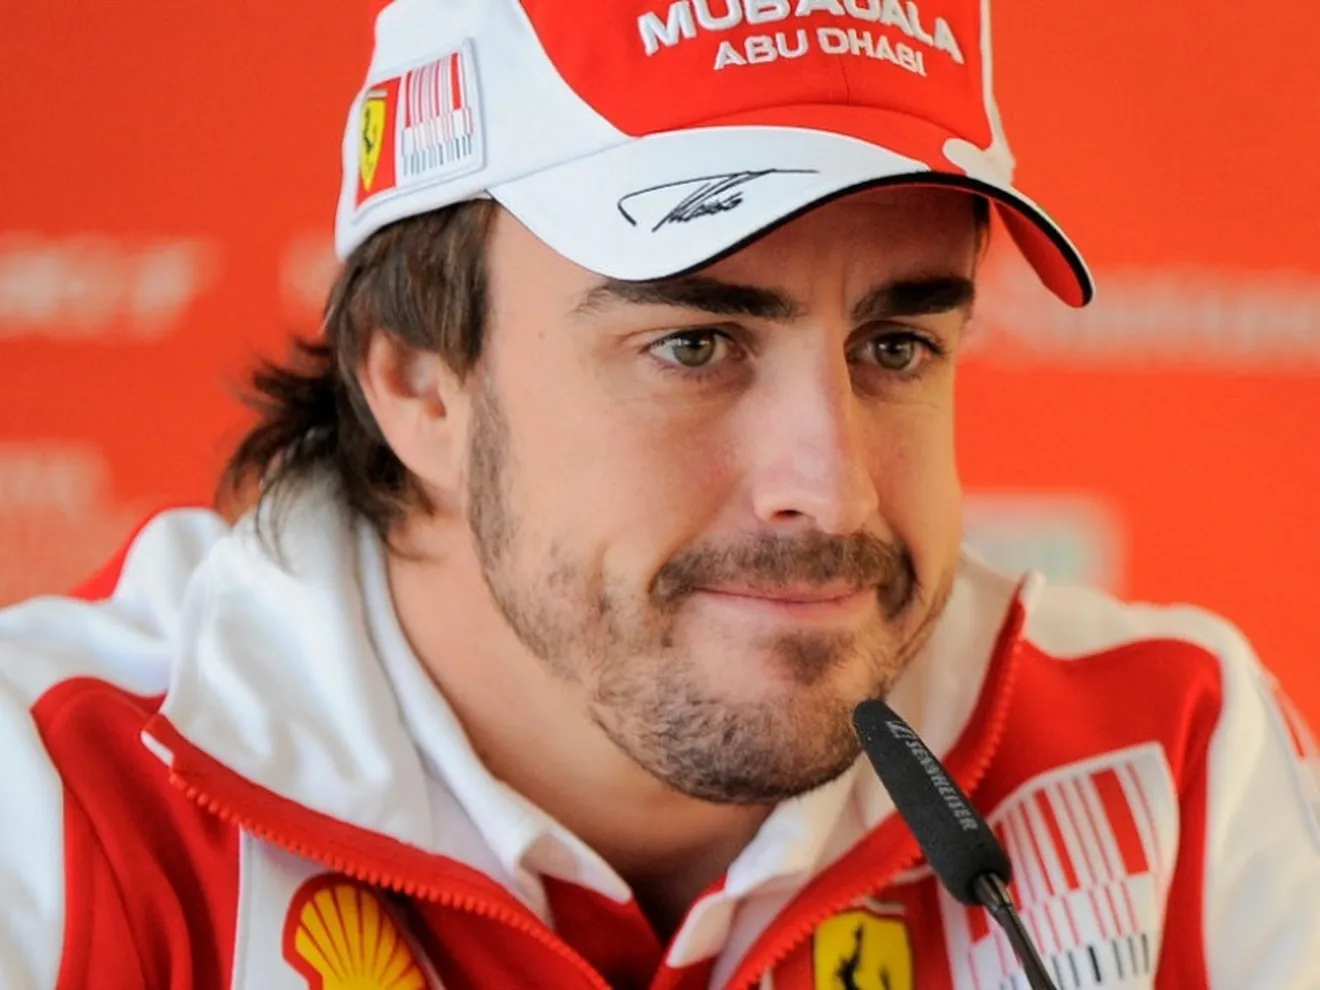 Alonso: ninguna carrera es completa sin Ferrari